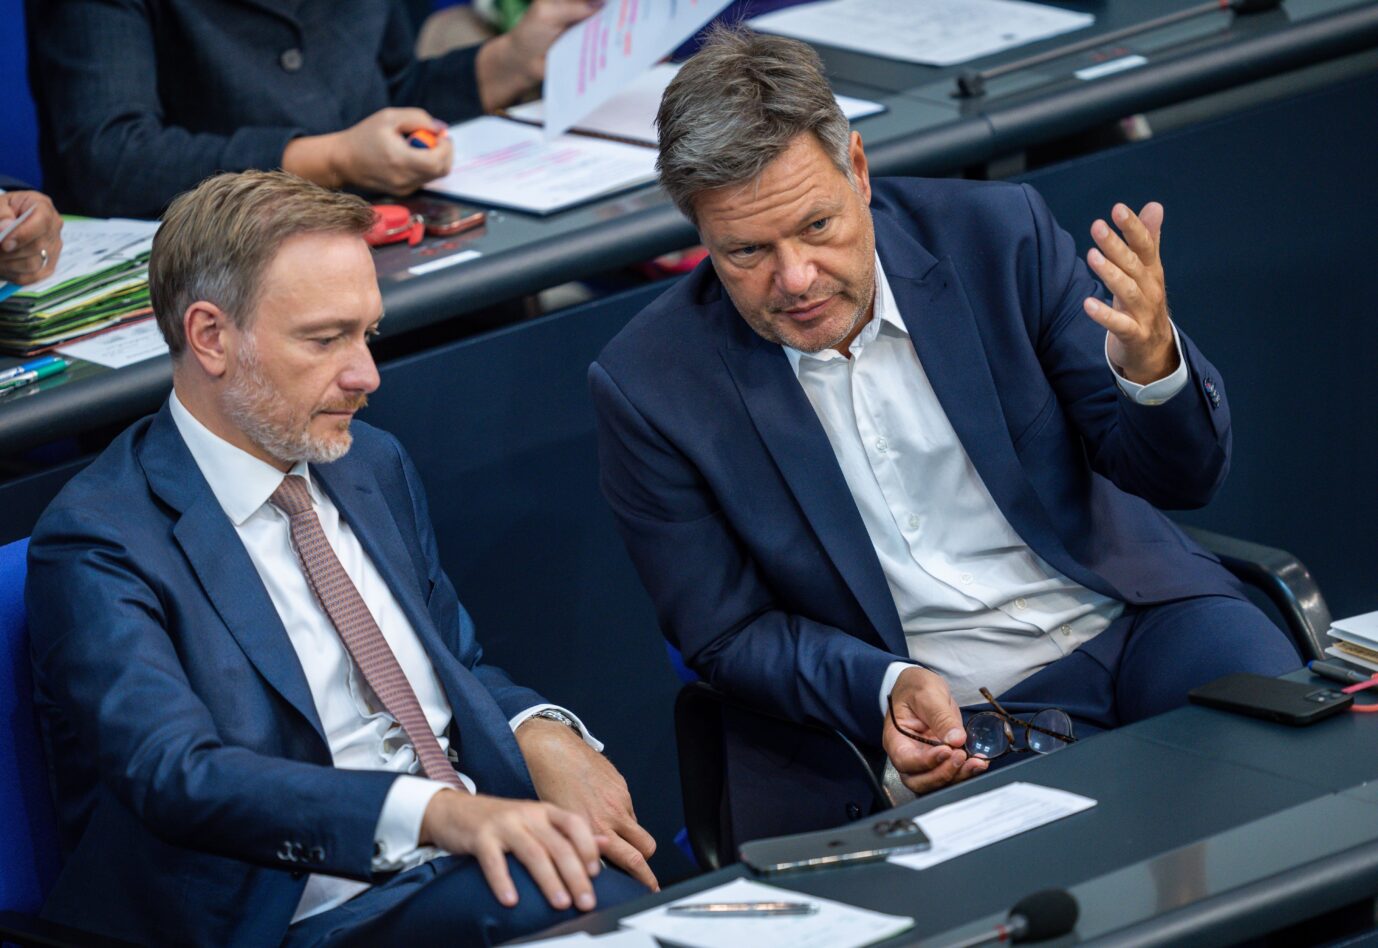 Robert Habeck (Bündnis 90/Die Grünen), Bundesminister für Wirtschaft und Klimaschutz, spricht mit Christian Lindner (FDP, l), Bundesminister der Finanzen, in der Generaldebatte zum Haushalt im Bundestag. Jetzt streiten sie über Atomkraft.